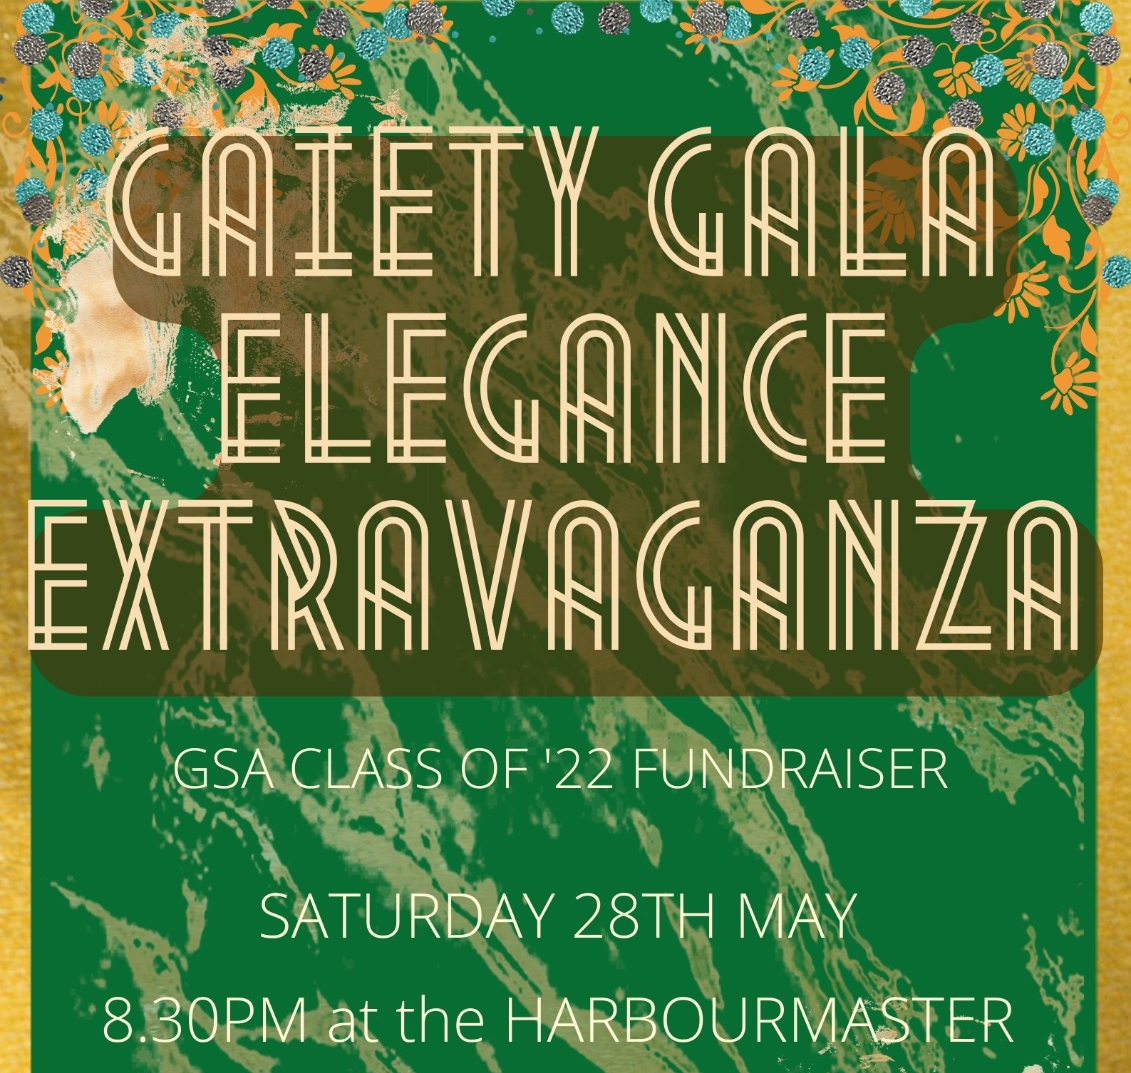 Gaiety Gala Elegance Extravaganza